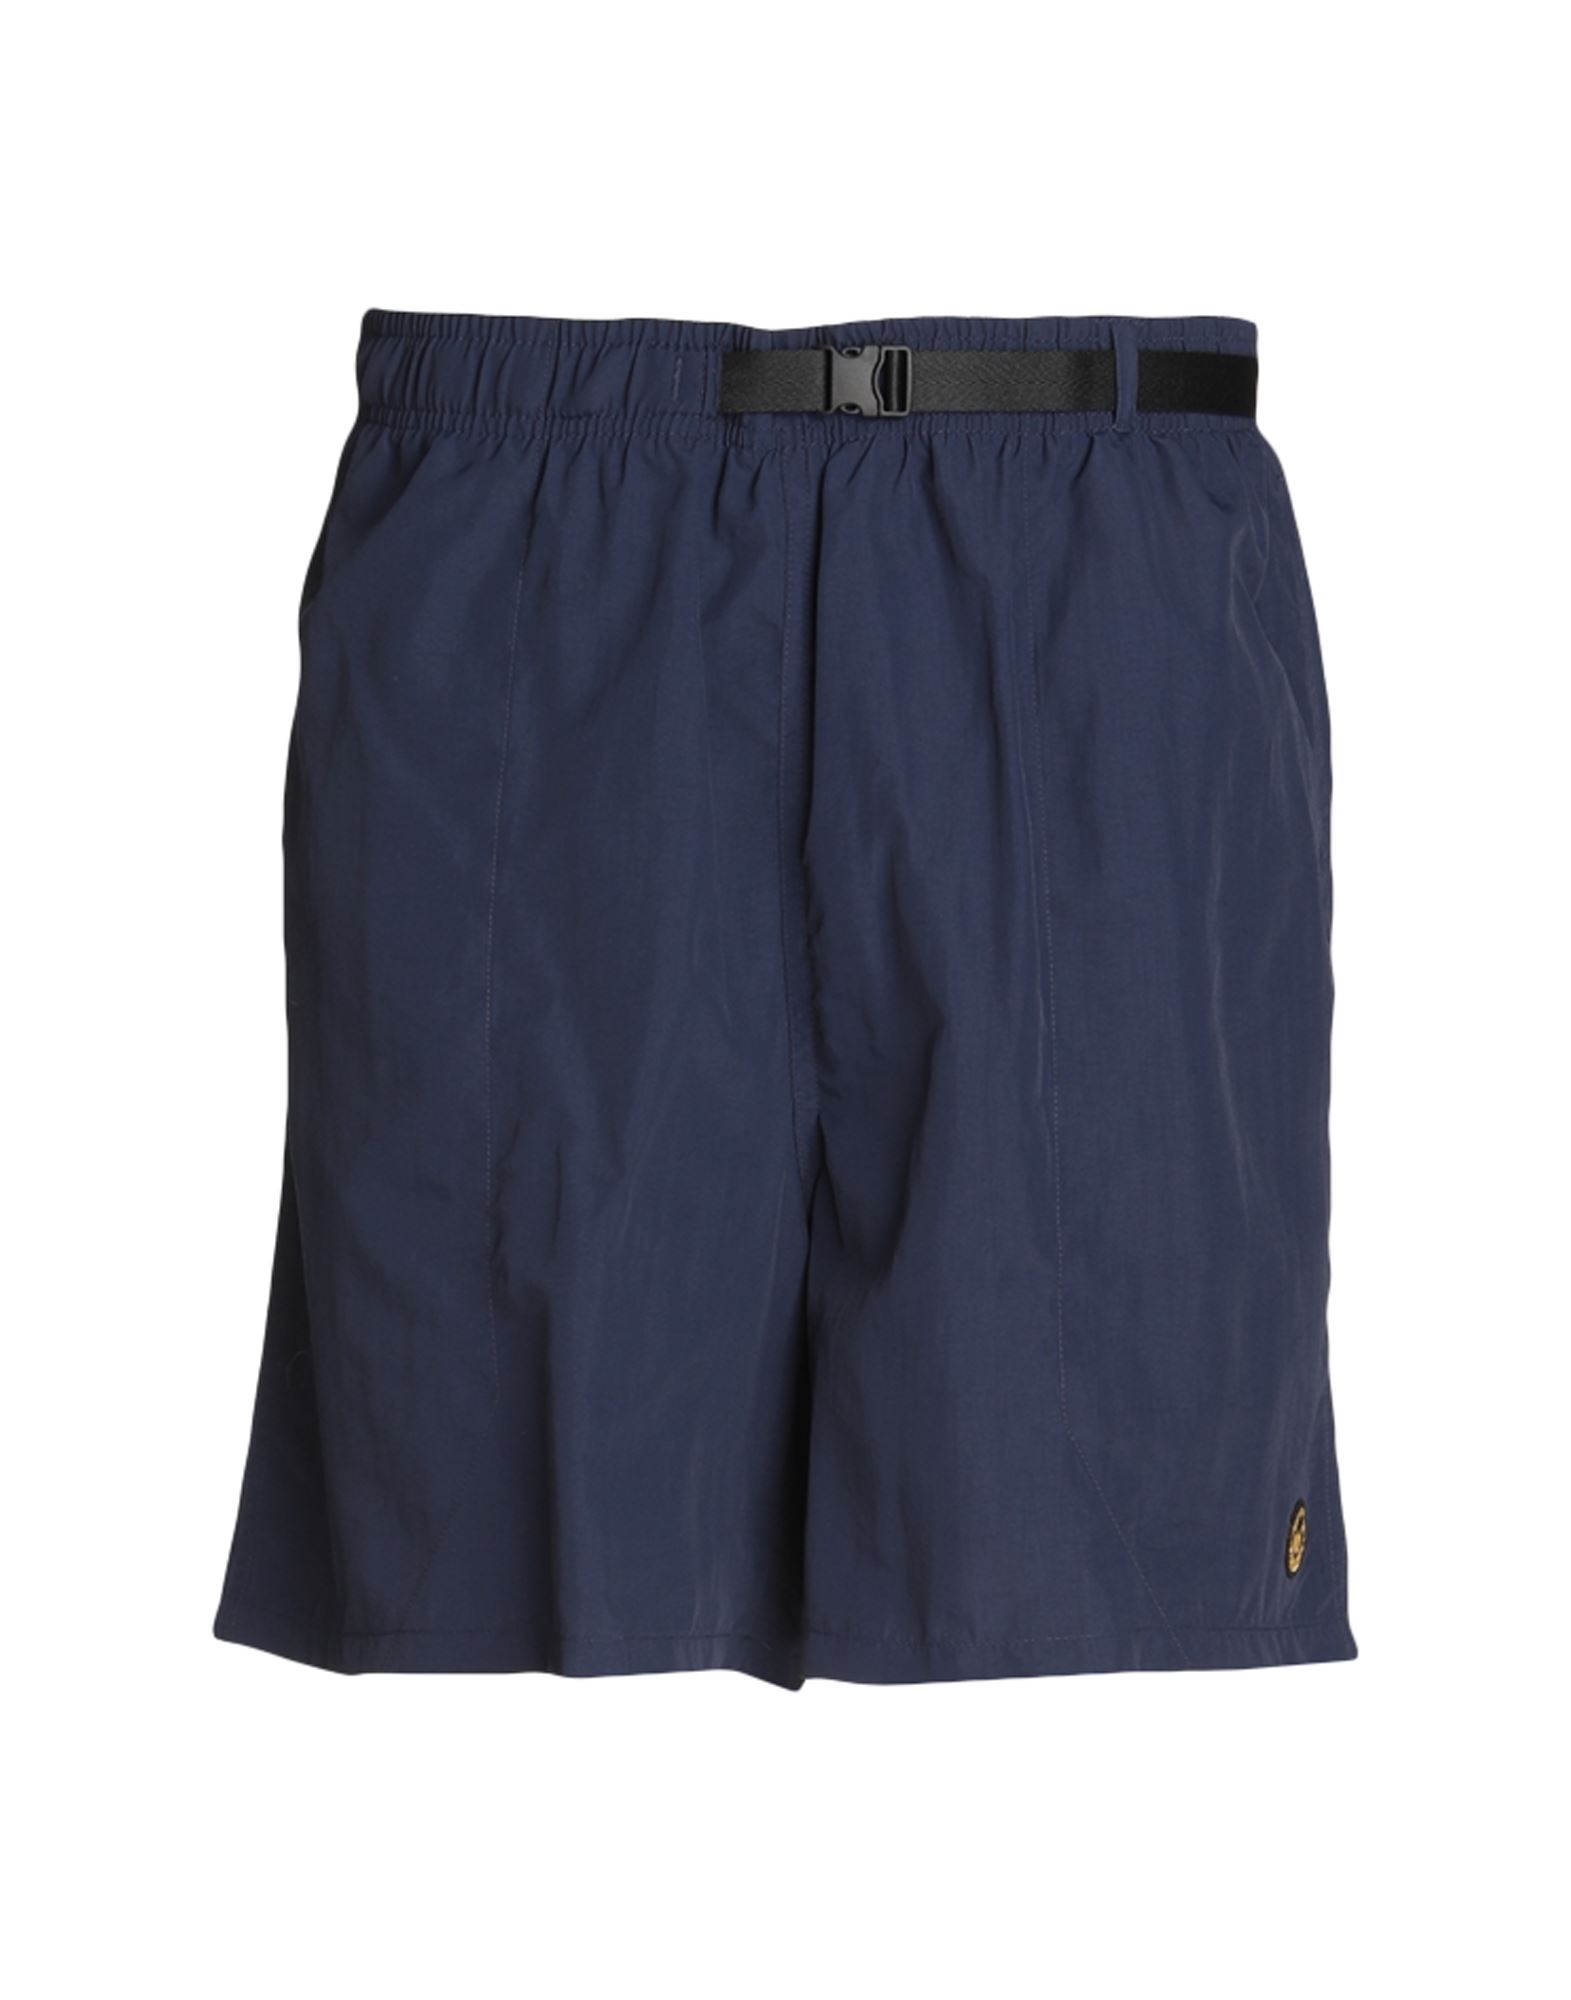 MARKET Shorts & Bermudashorts Herren Marineblau von MARKET